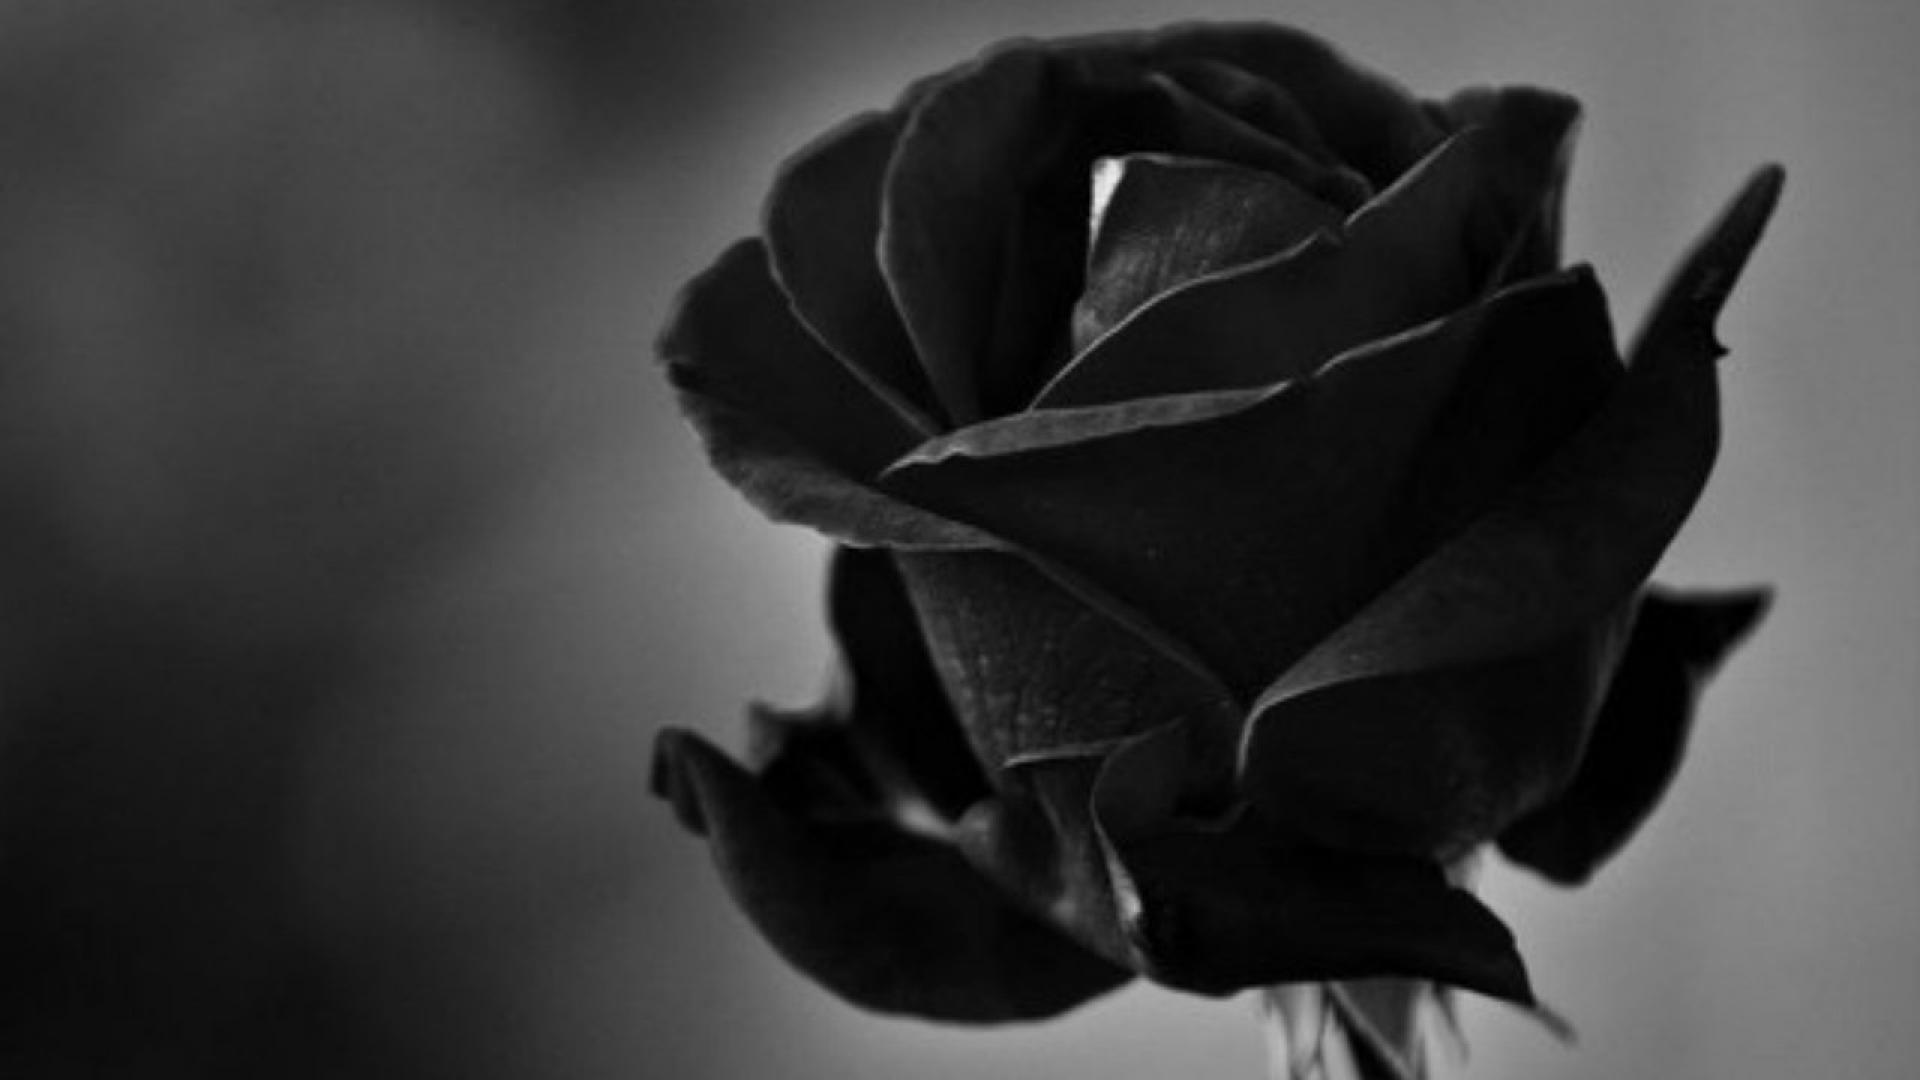 [77+] Black Roses Wallpaper | WallpaperSafari.com